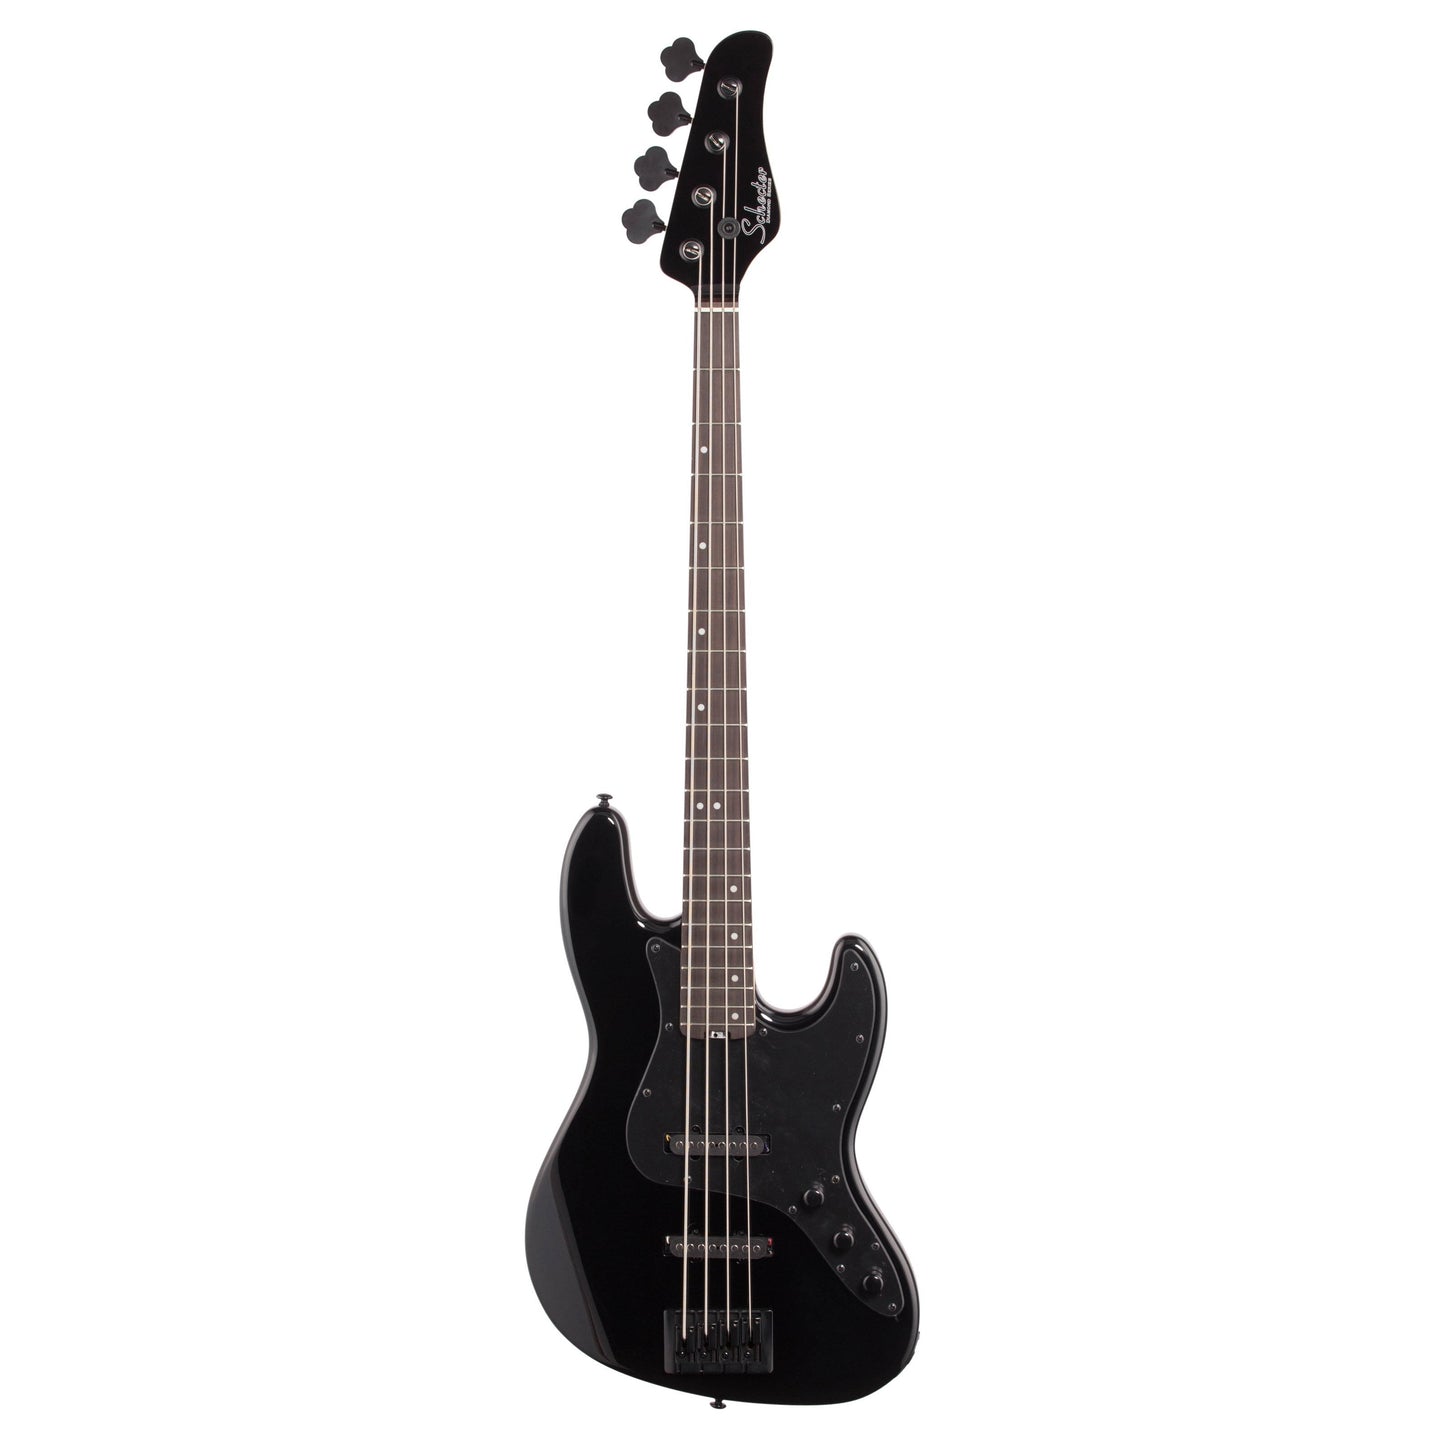 Schecter J4 Electric Bass, Gloss Black